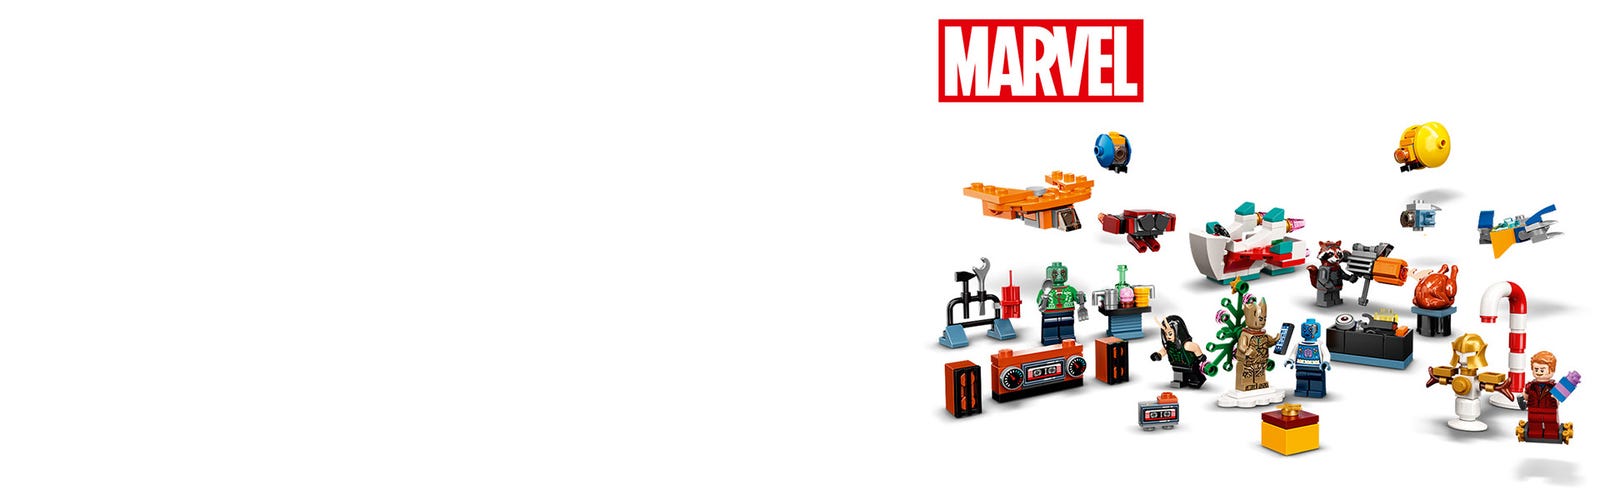 Le calendrier de l’Avent - LEGO® Les Gardiens de la Galaxie™ - 76231